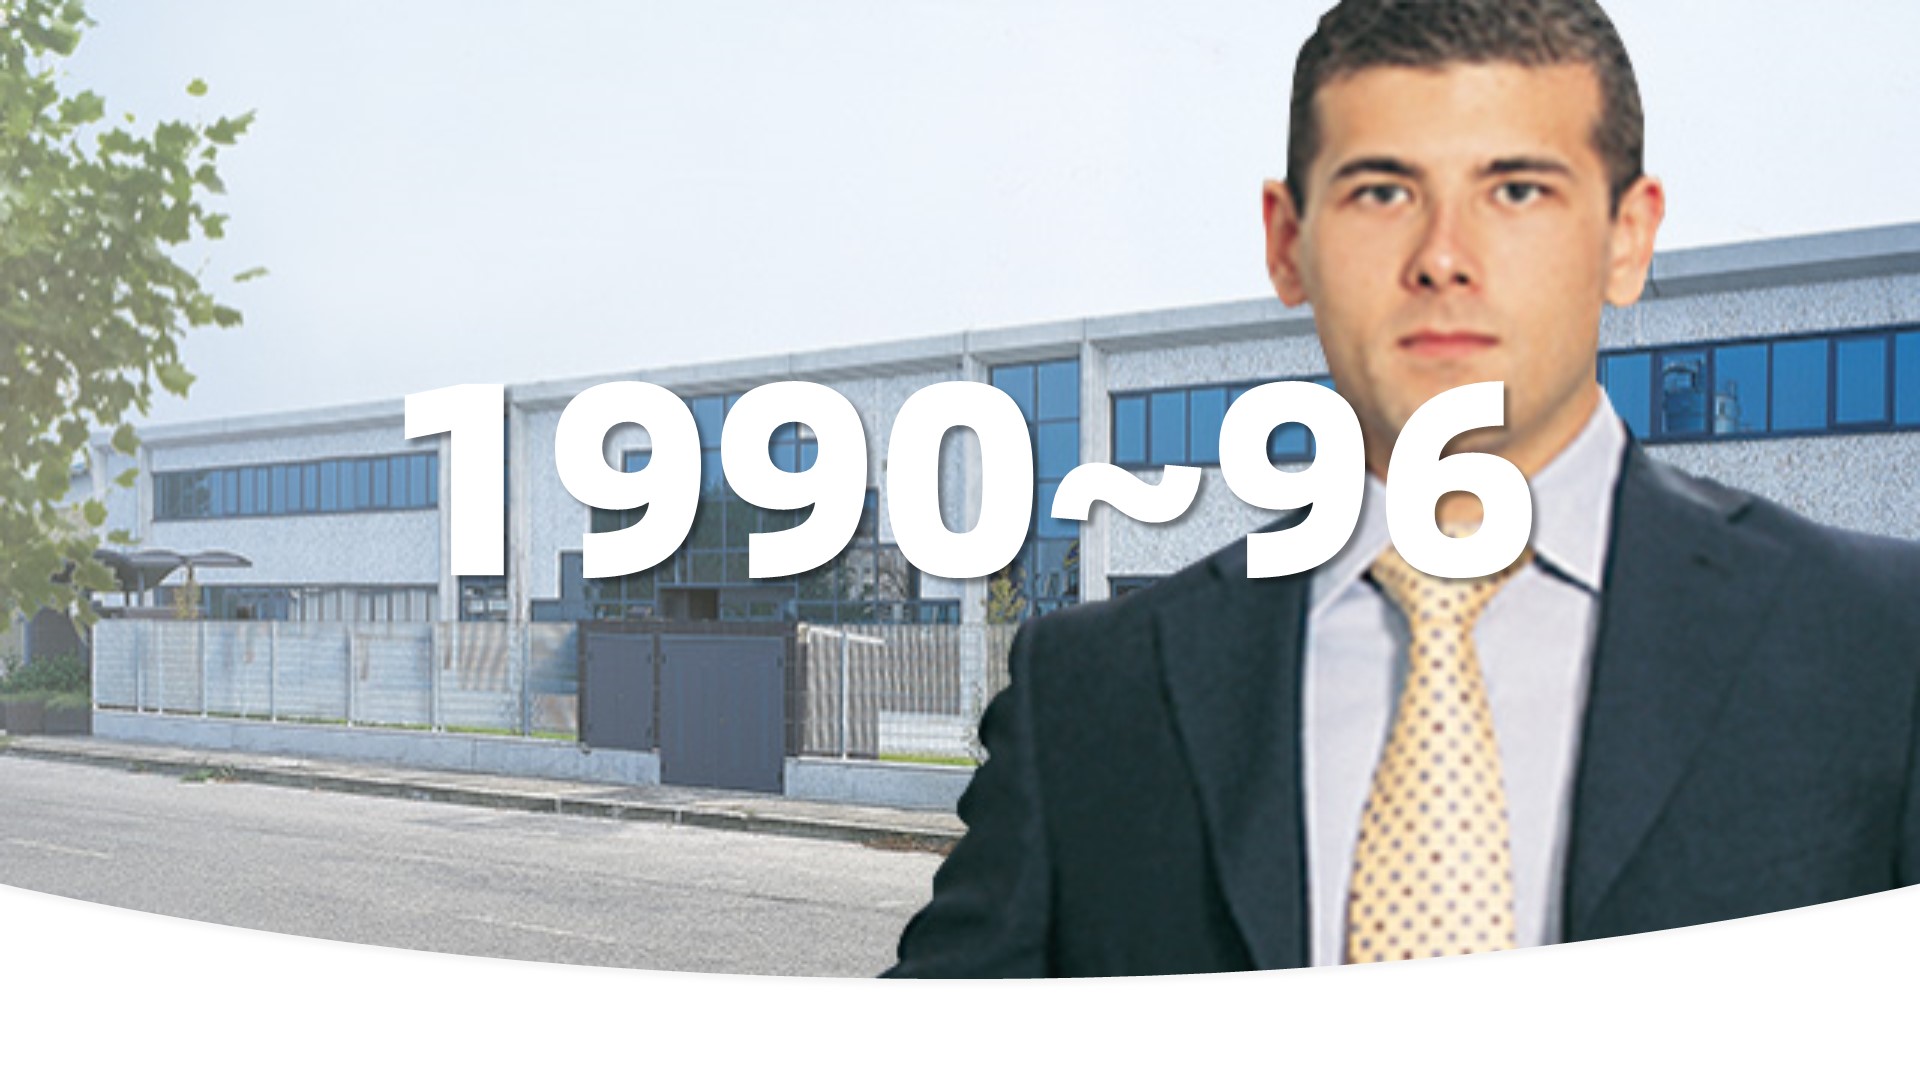 公司营业额翻了三番。1995年，泽尼特又通过了UNI-EN-ISO 9001 认证。1996年，公司将总部迁到圣切萨里奥，占地1万平方米。David Bottan的胞弟Lorenzo Bottan也加入了泽尼特。